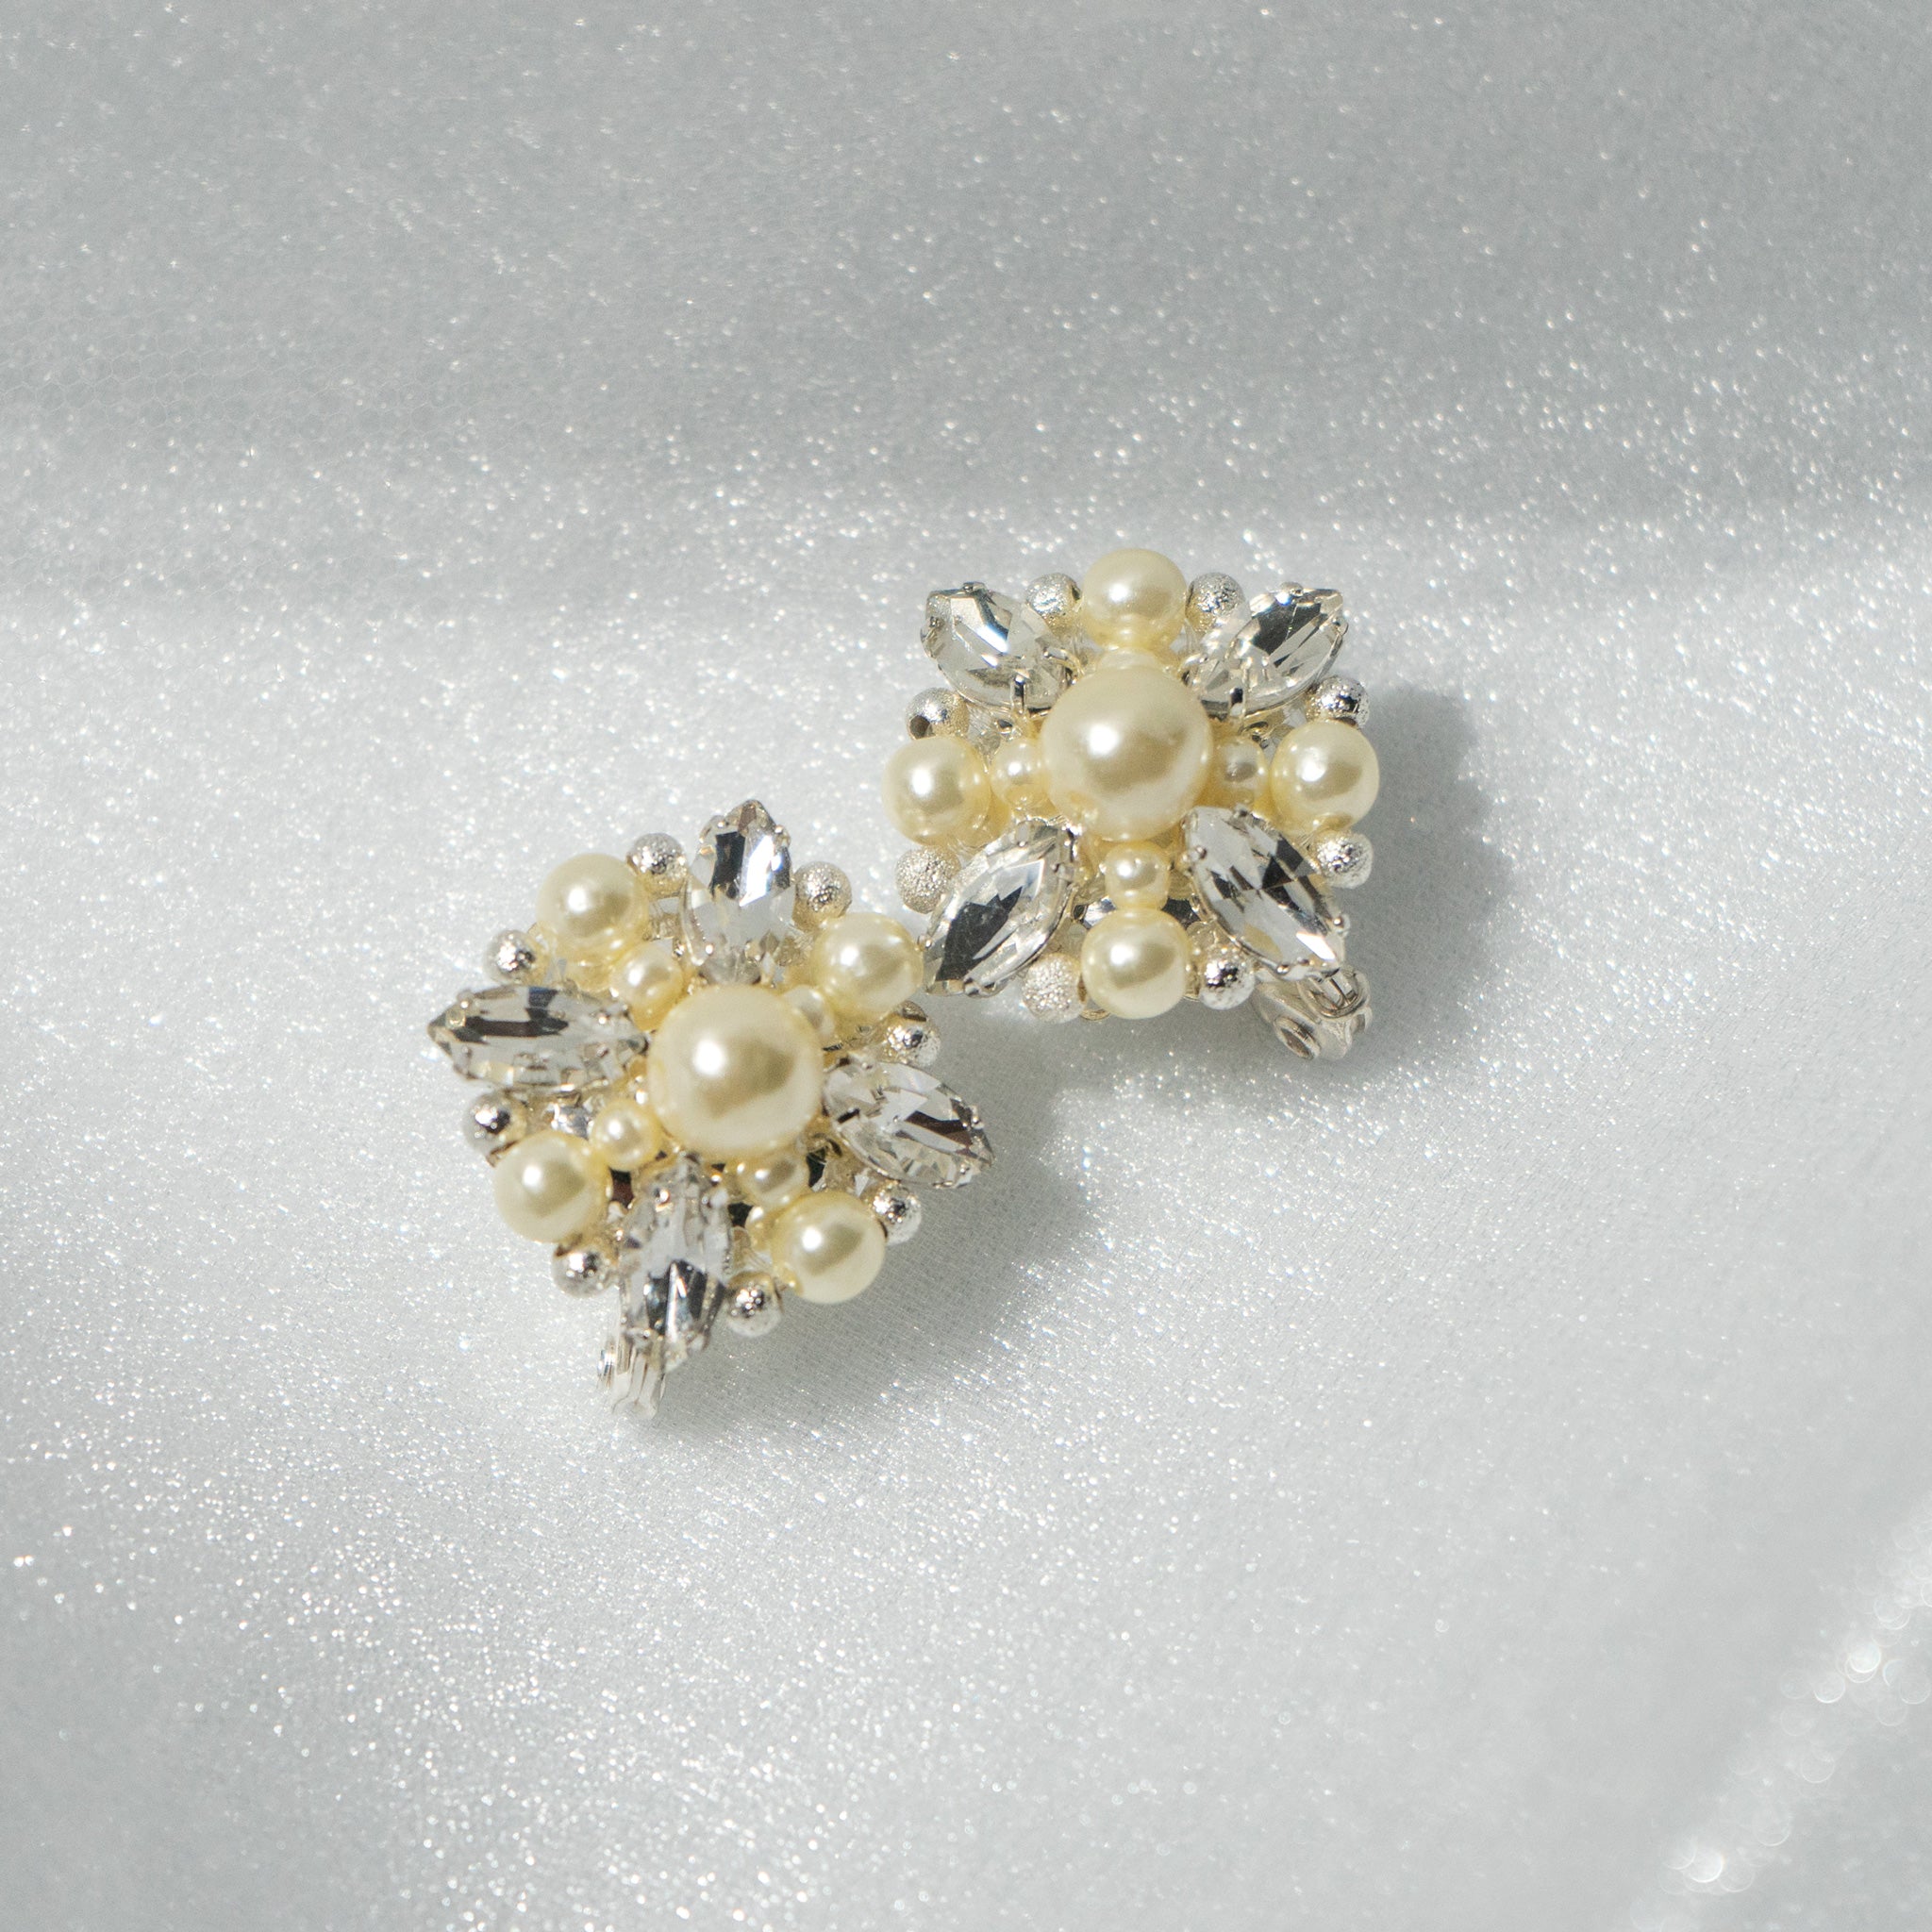 Pearl Bijou Flower motif pierced earrings